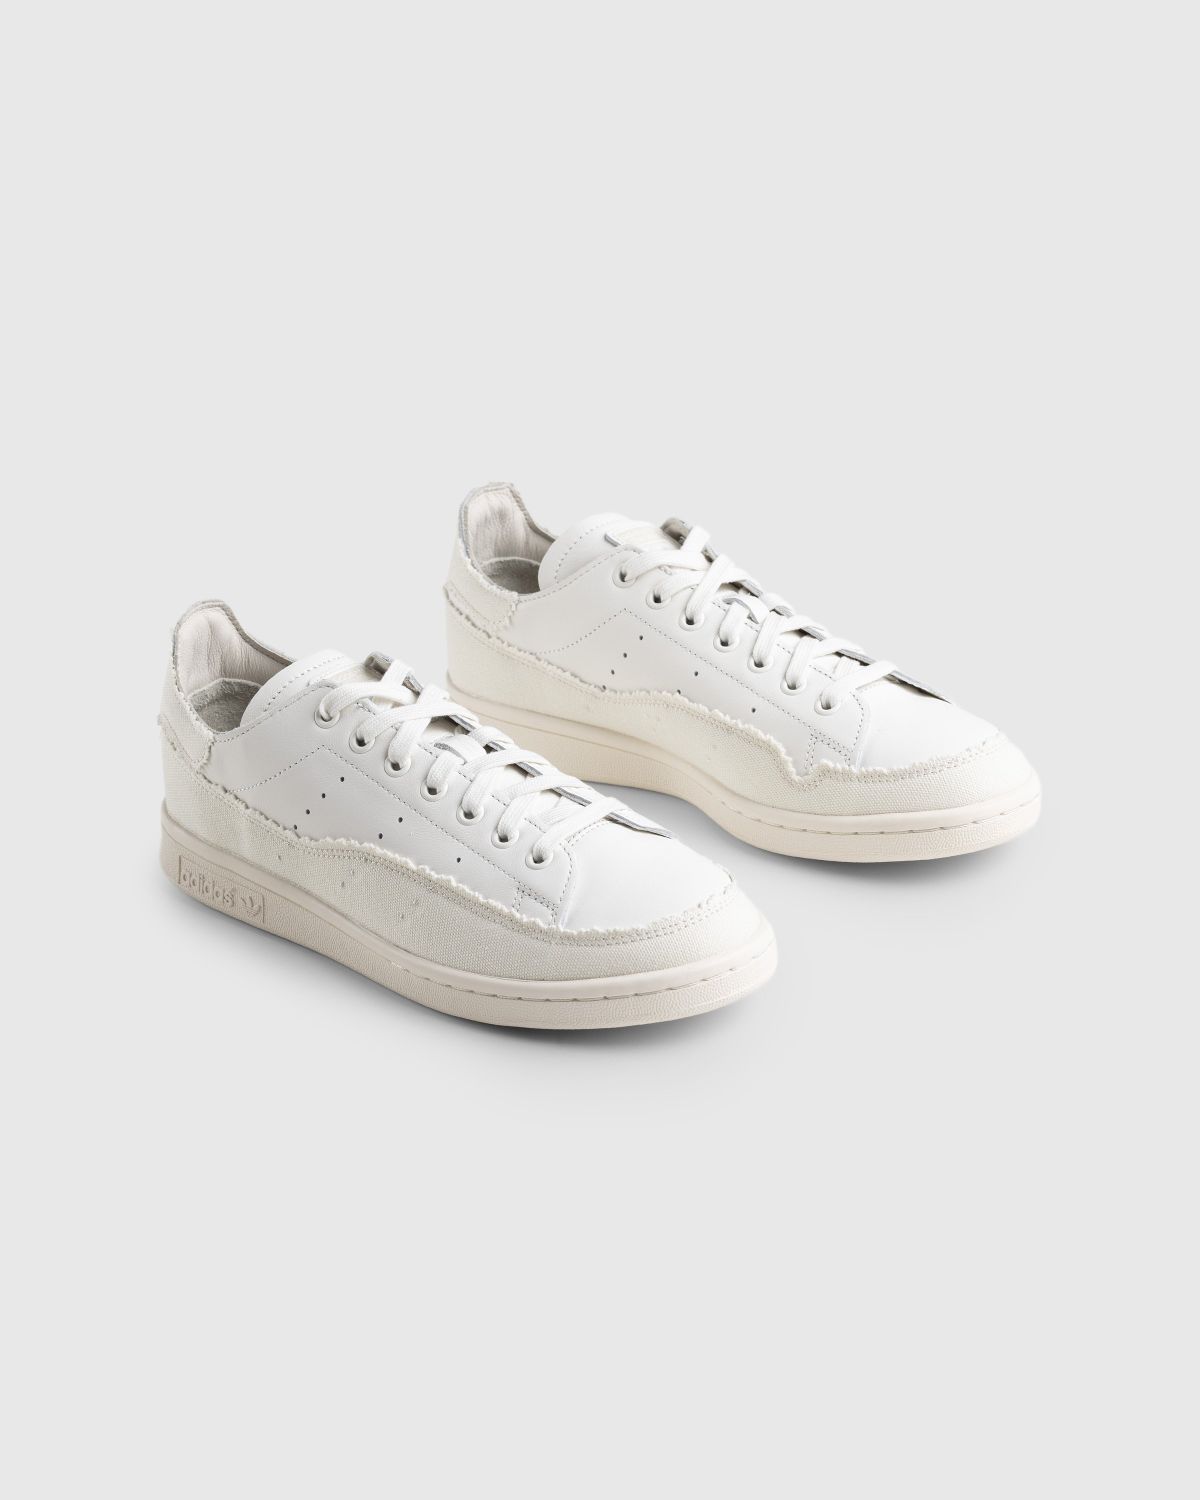 Adidas – Stan Smith Recon White - Sneakers - White - Image 3